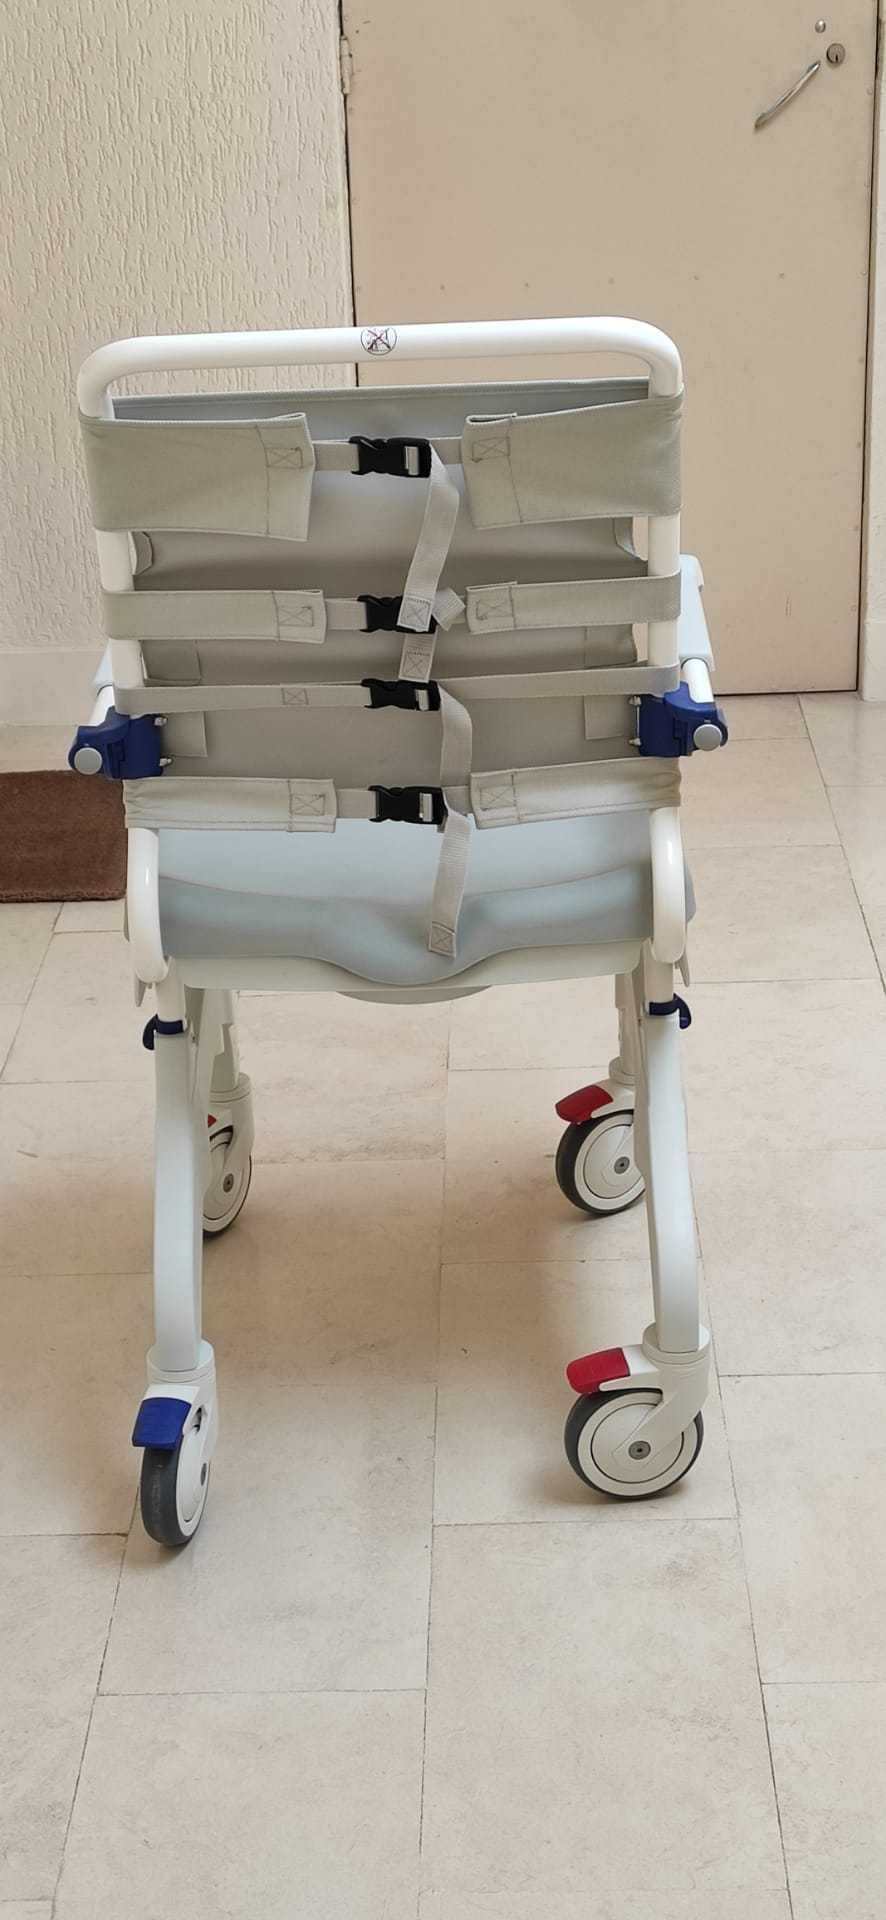 Cadeira de apoio wc nova e sem uso!!!